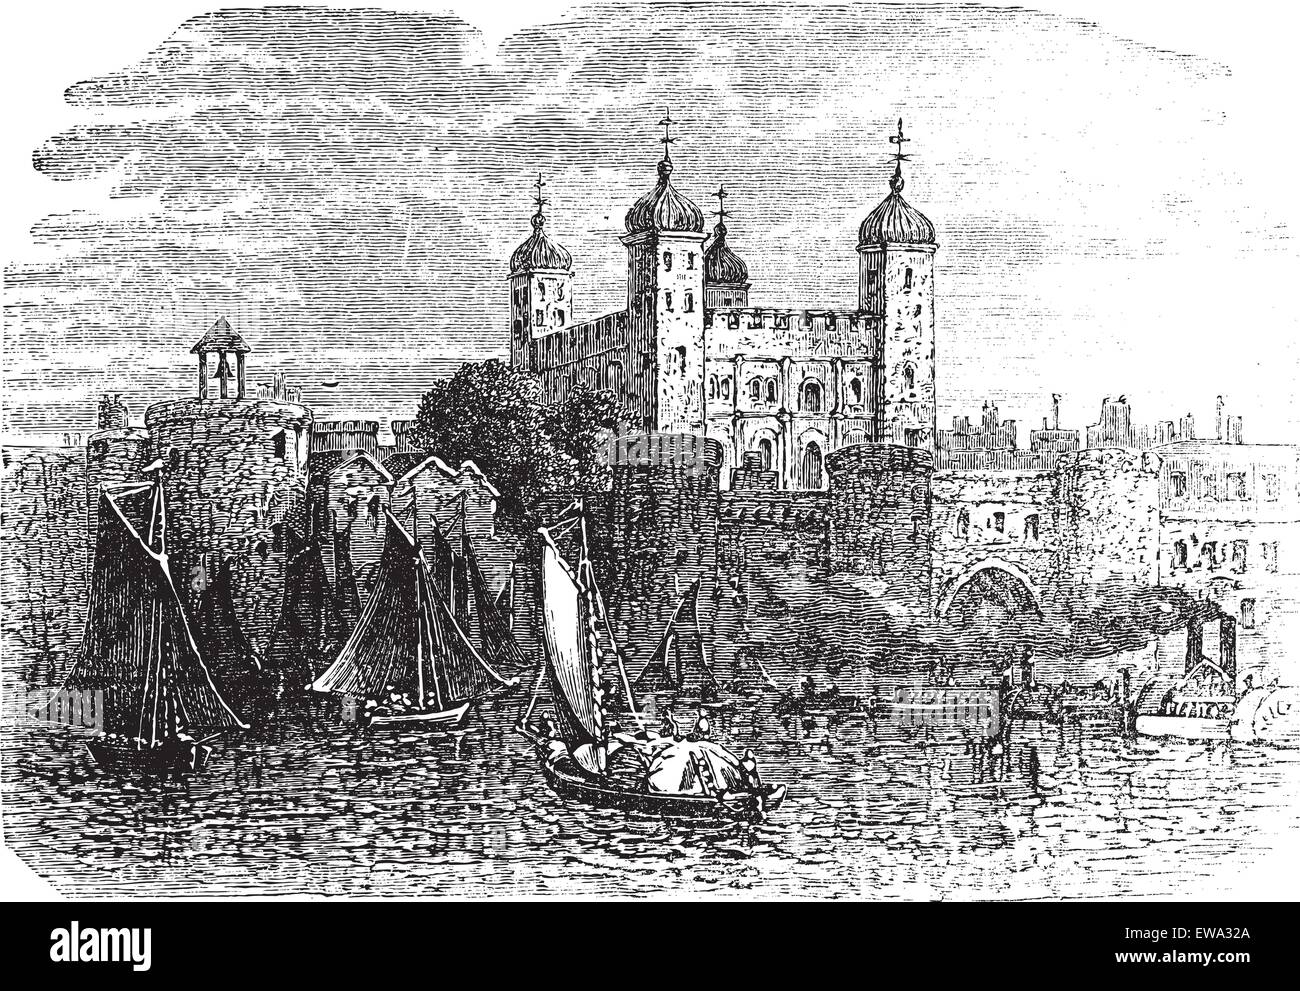 La Torre di Londra o la sua maestà il Palazzo Reale e la fortezza di Londra, Inghilterra, durante il 1890s, vintage incisione. Vecchie illustrazioni incise della Torre di Londra con lo spostamento di navi in parte anteriore. Illustrazione Vettoriale